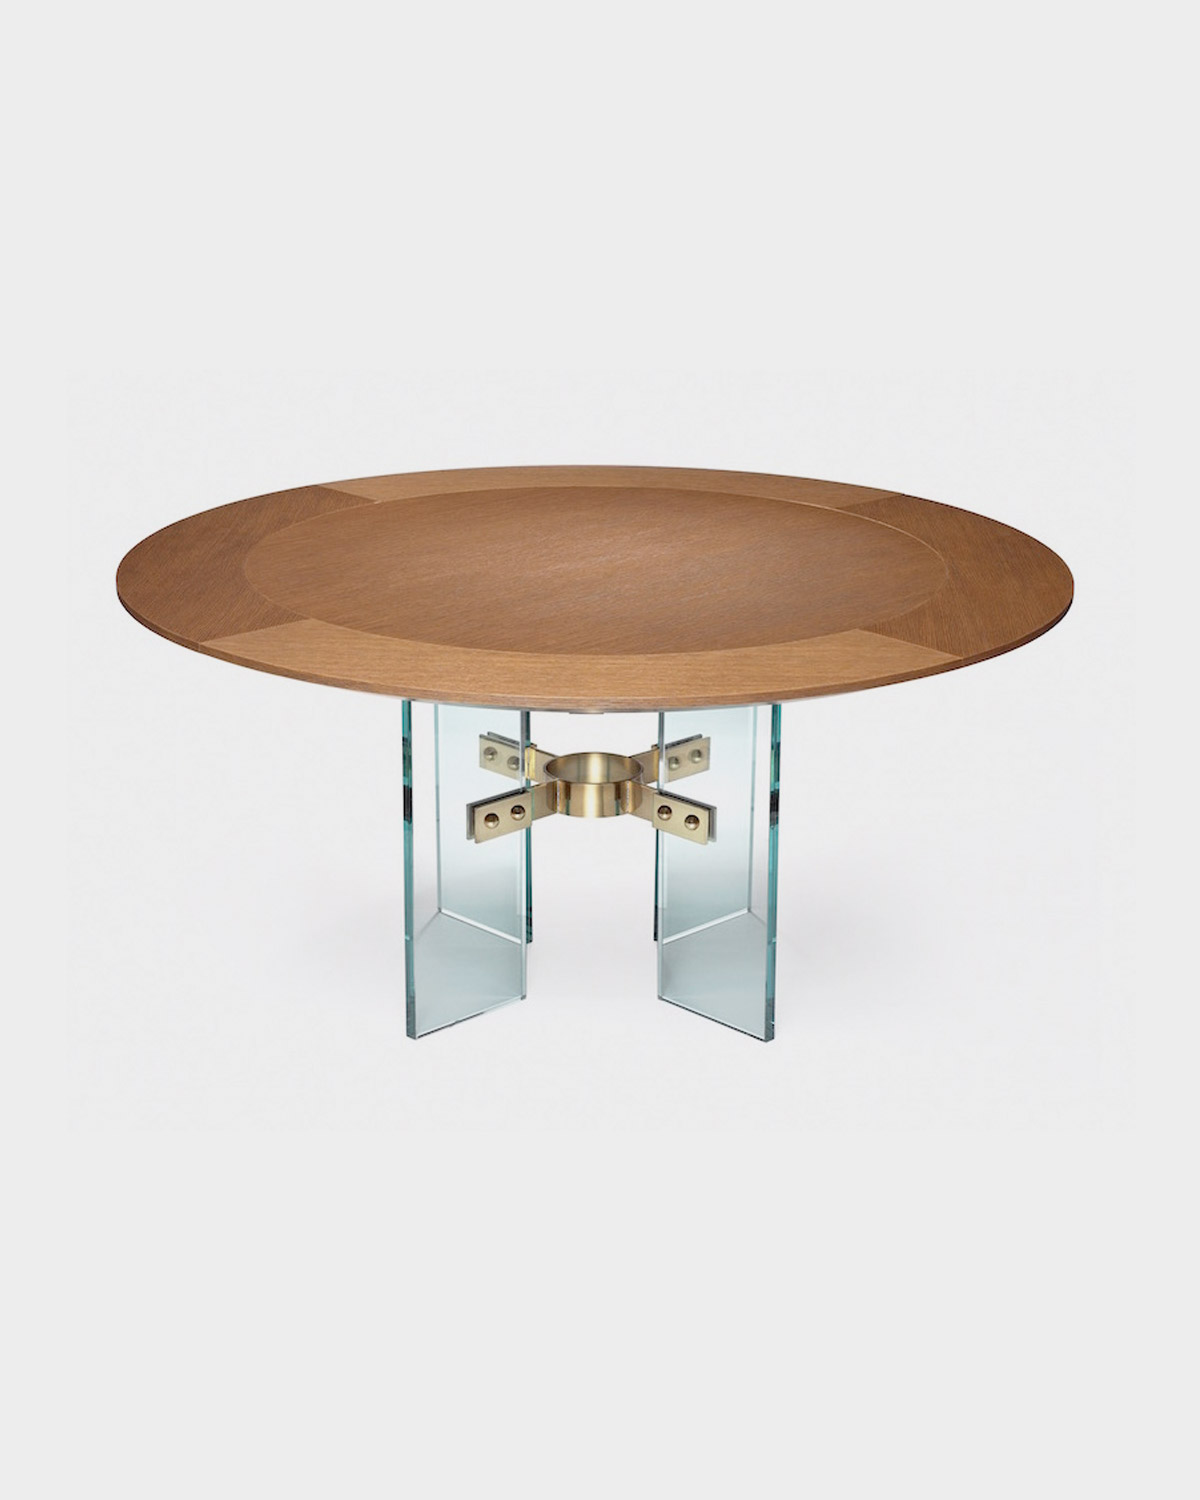 The Jules Center / Dining Table by Studio Van den Akker